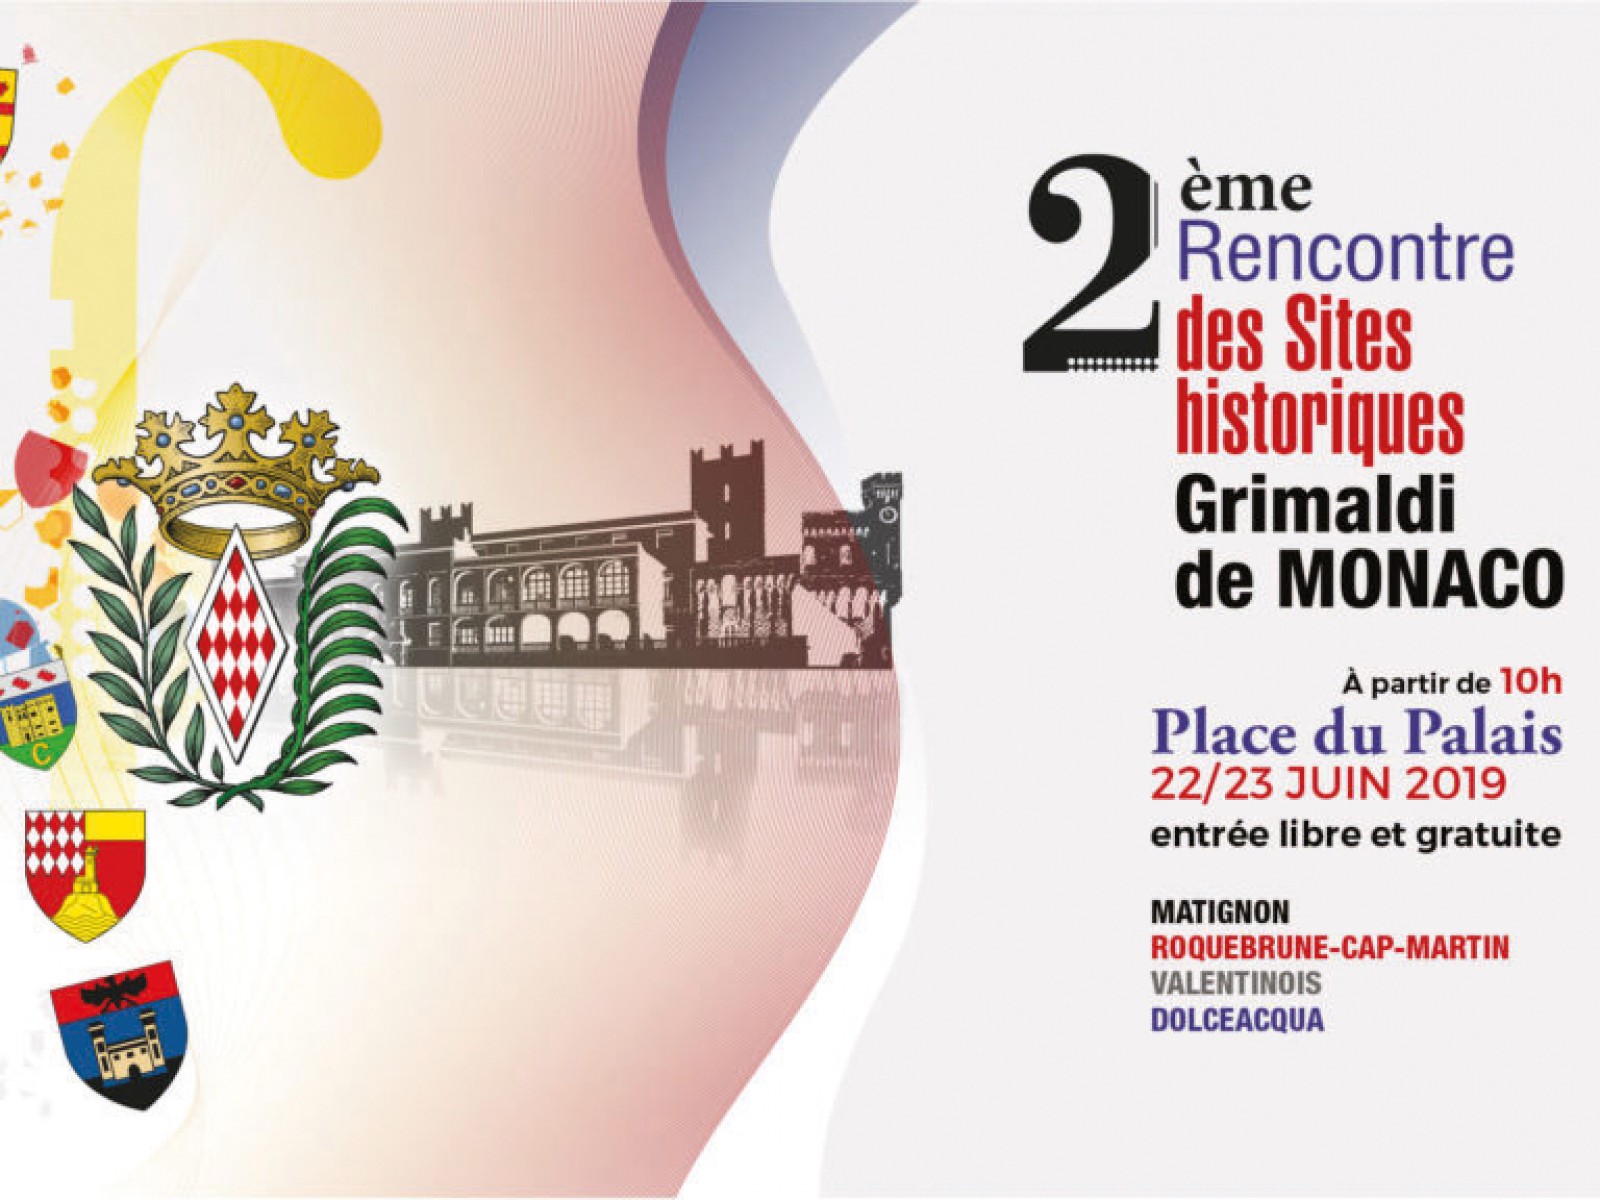 Rencontre des Sites historiques Grimaldi de Monaco : 2e édition